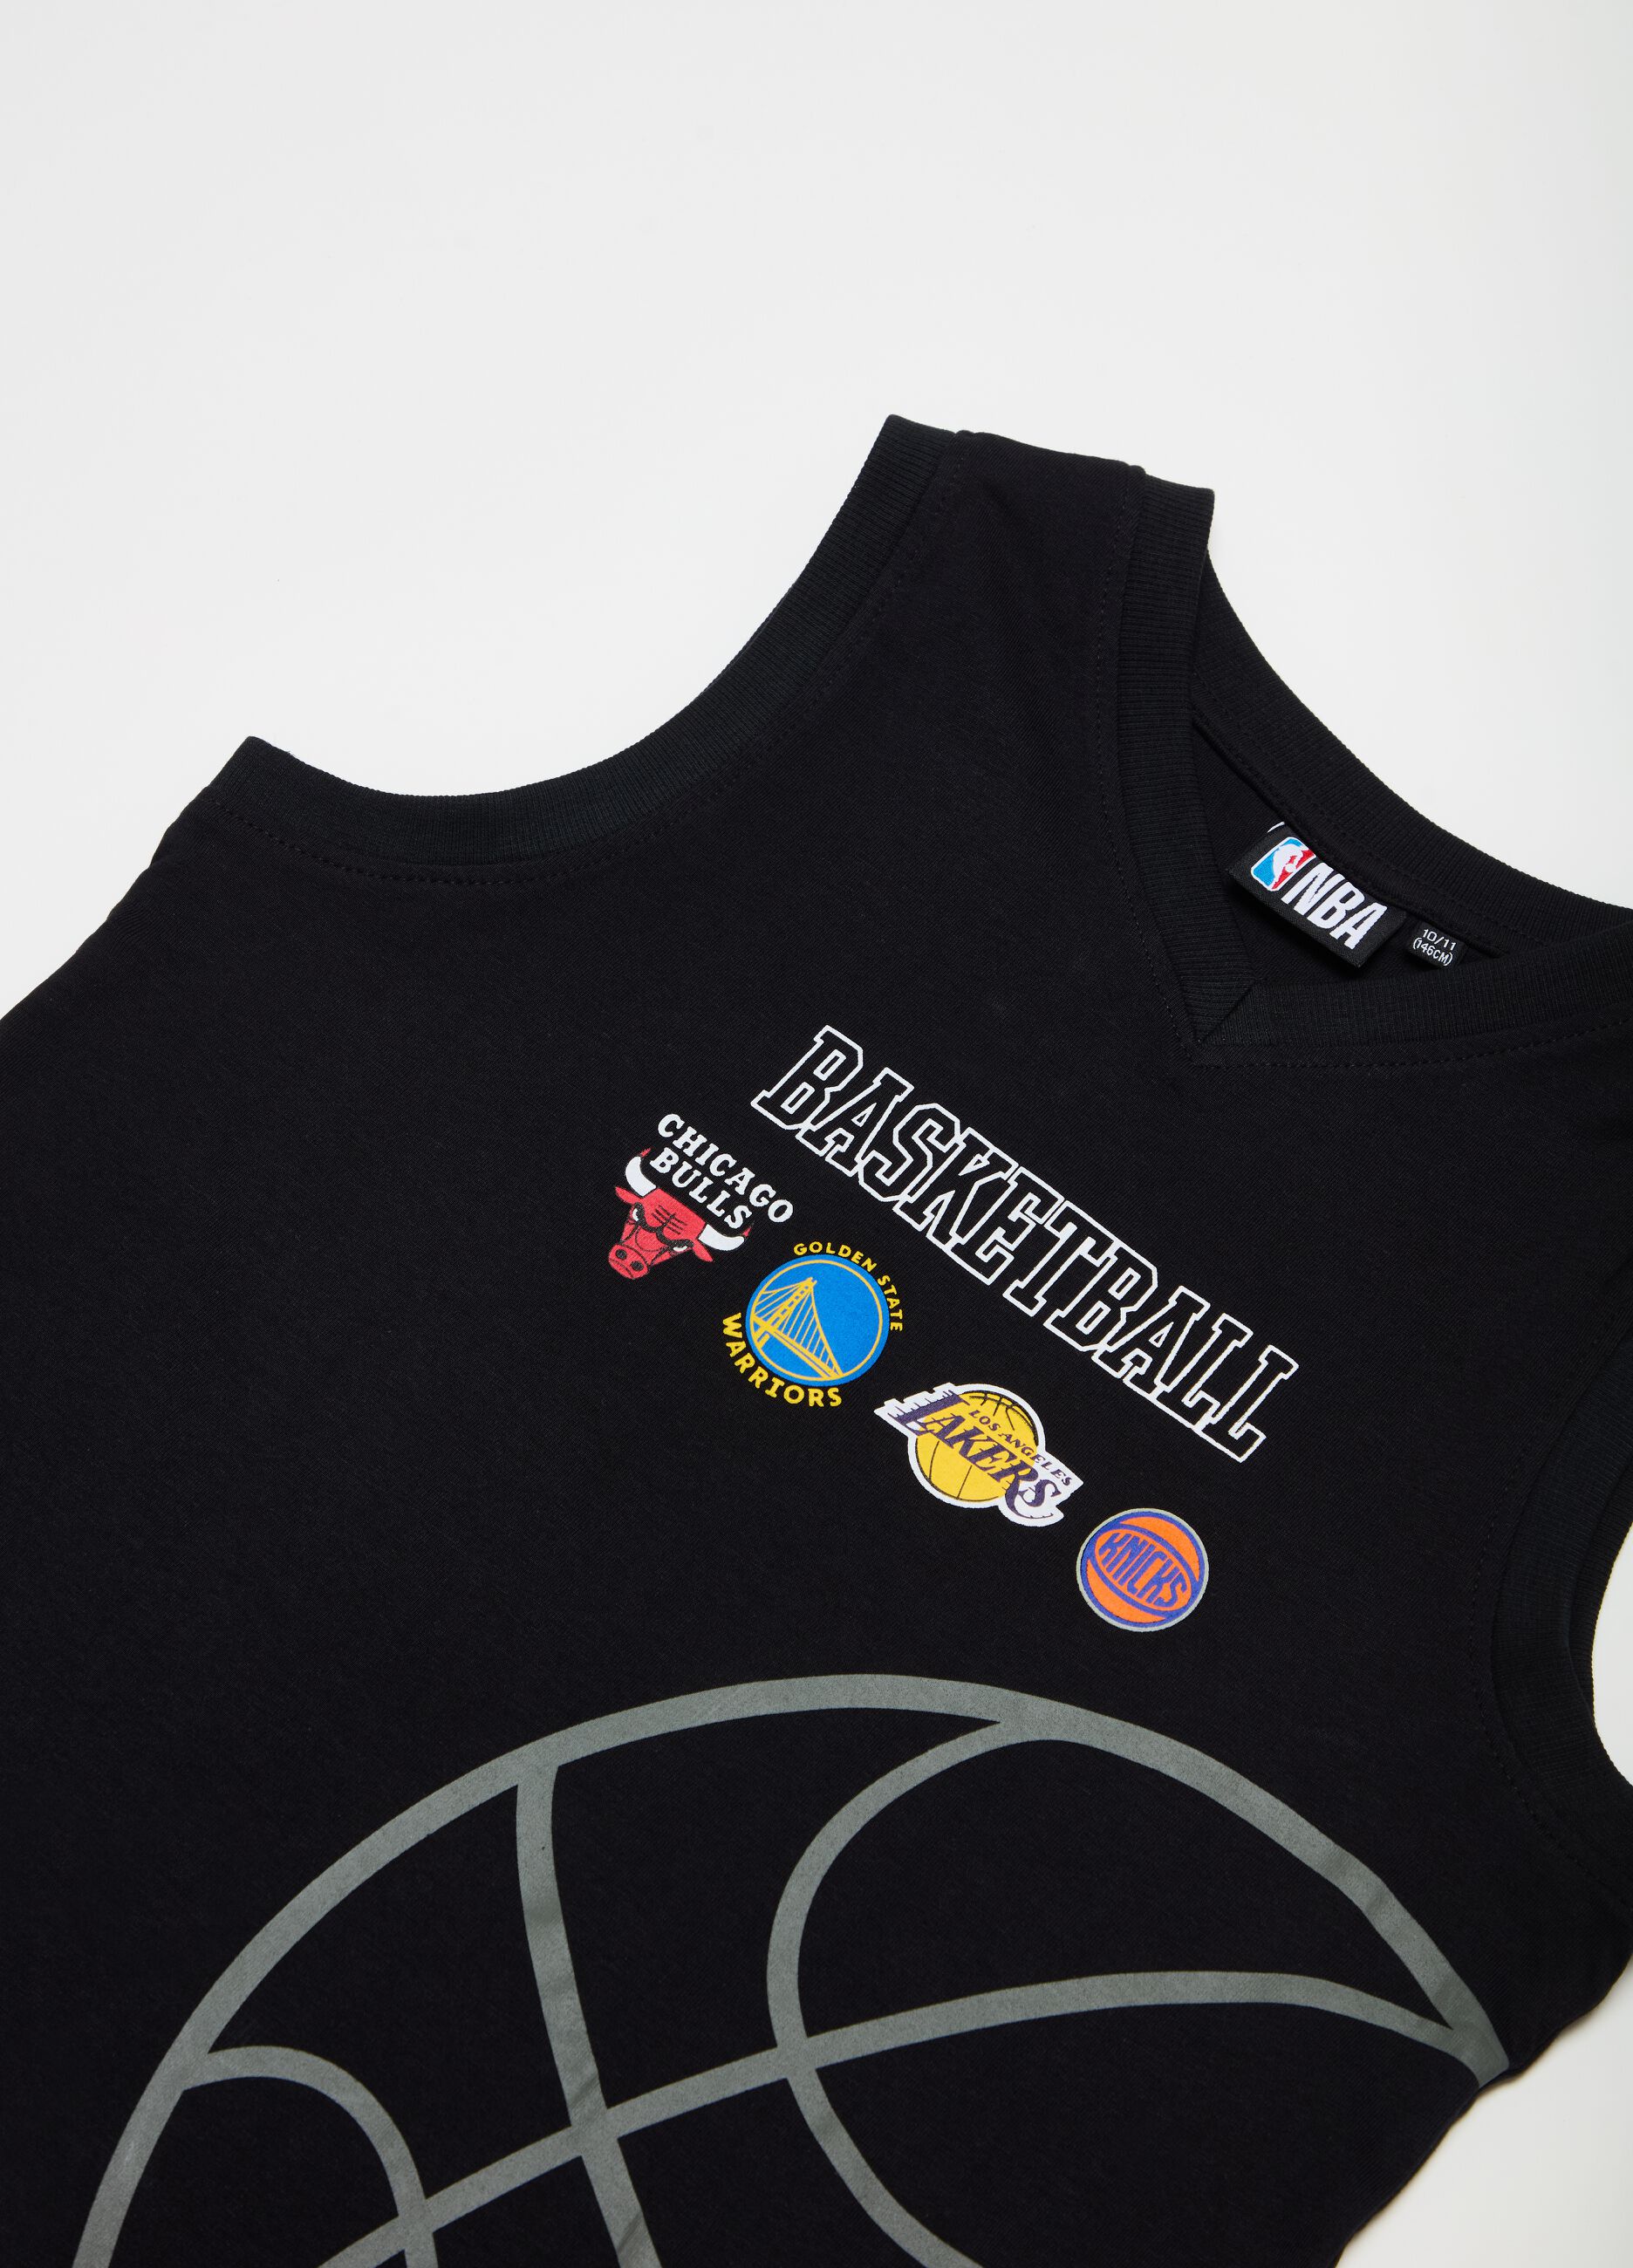 Camiseta de tirantes logos equipos NBA estampados